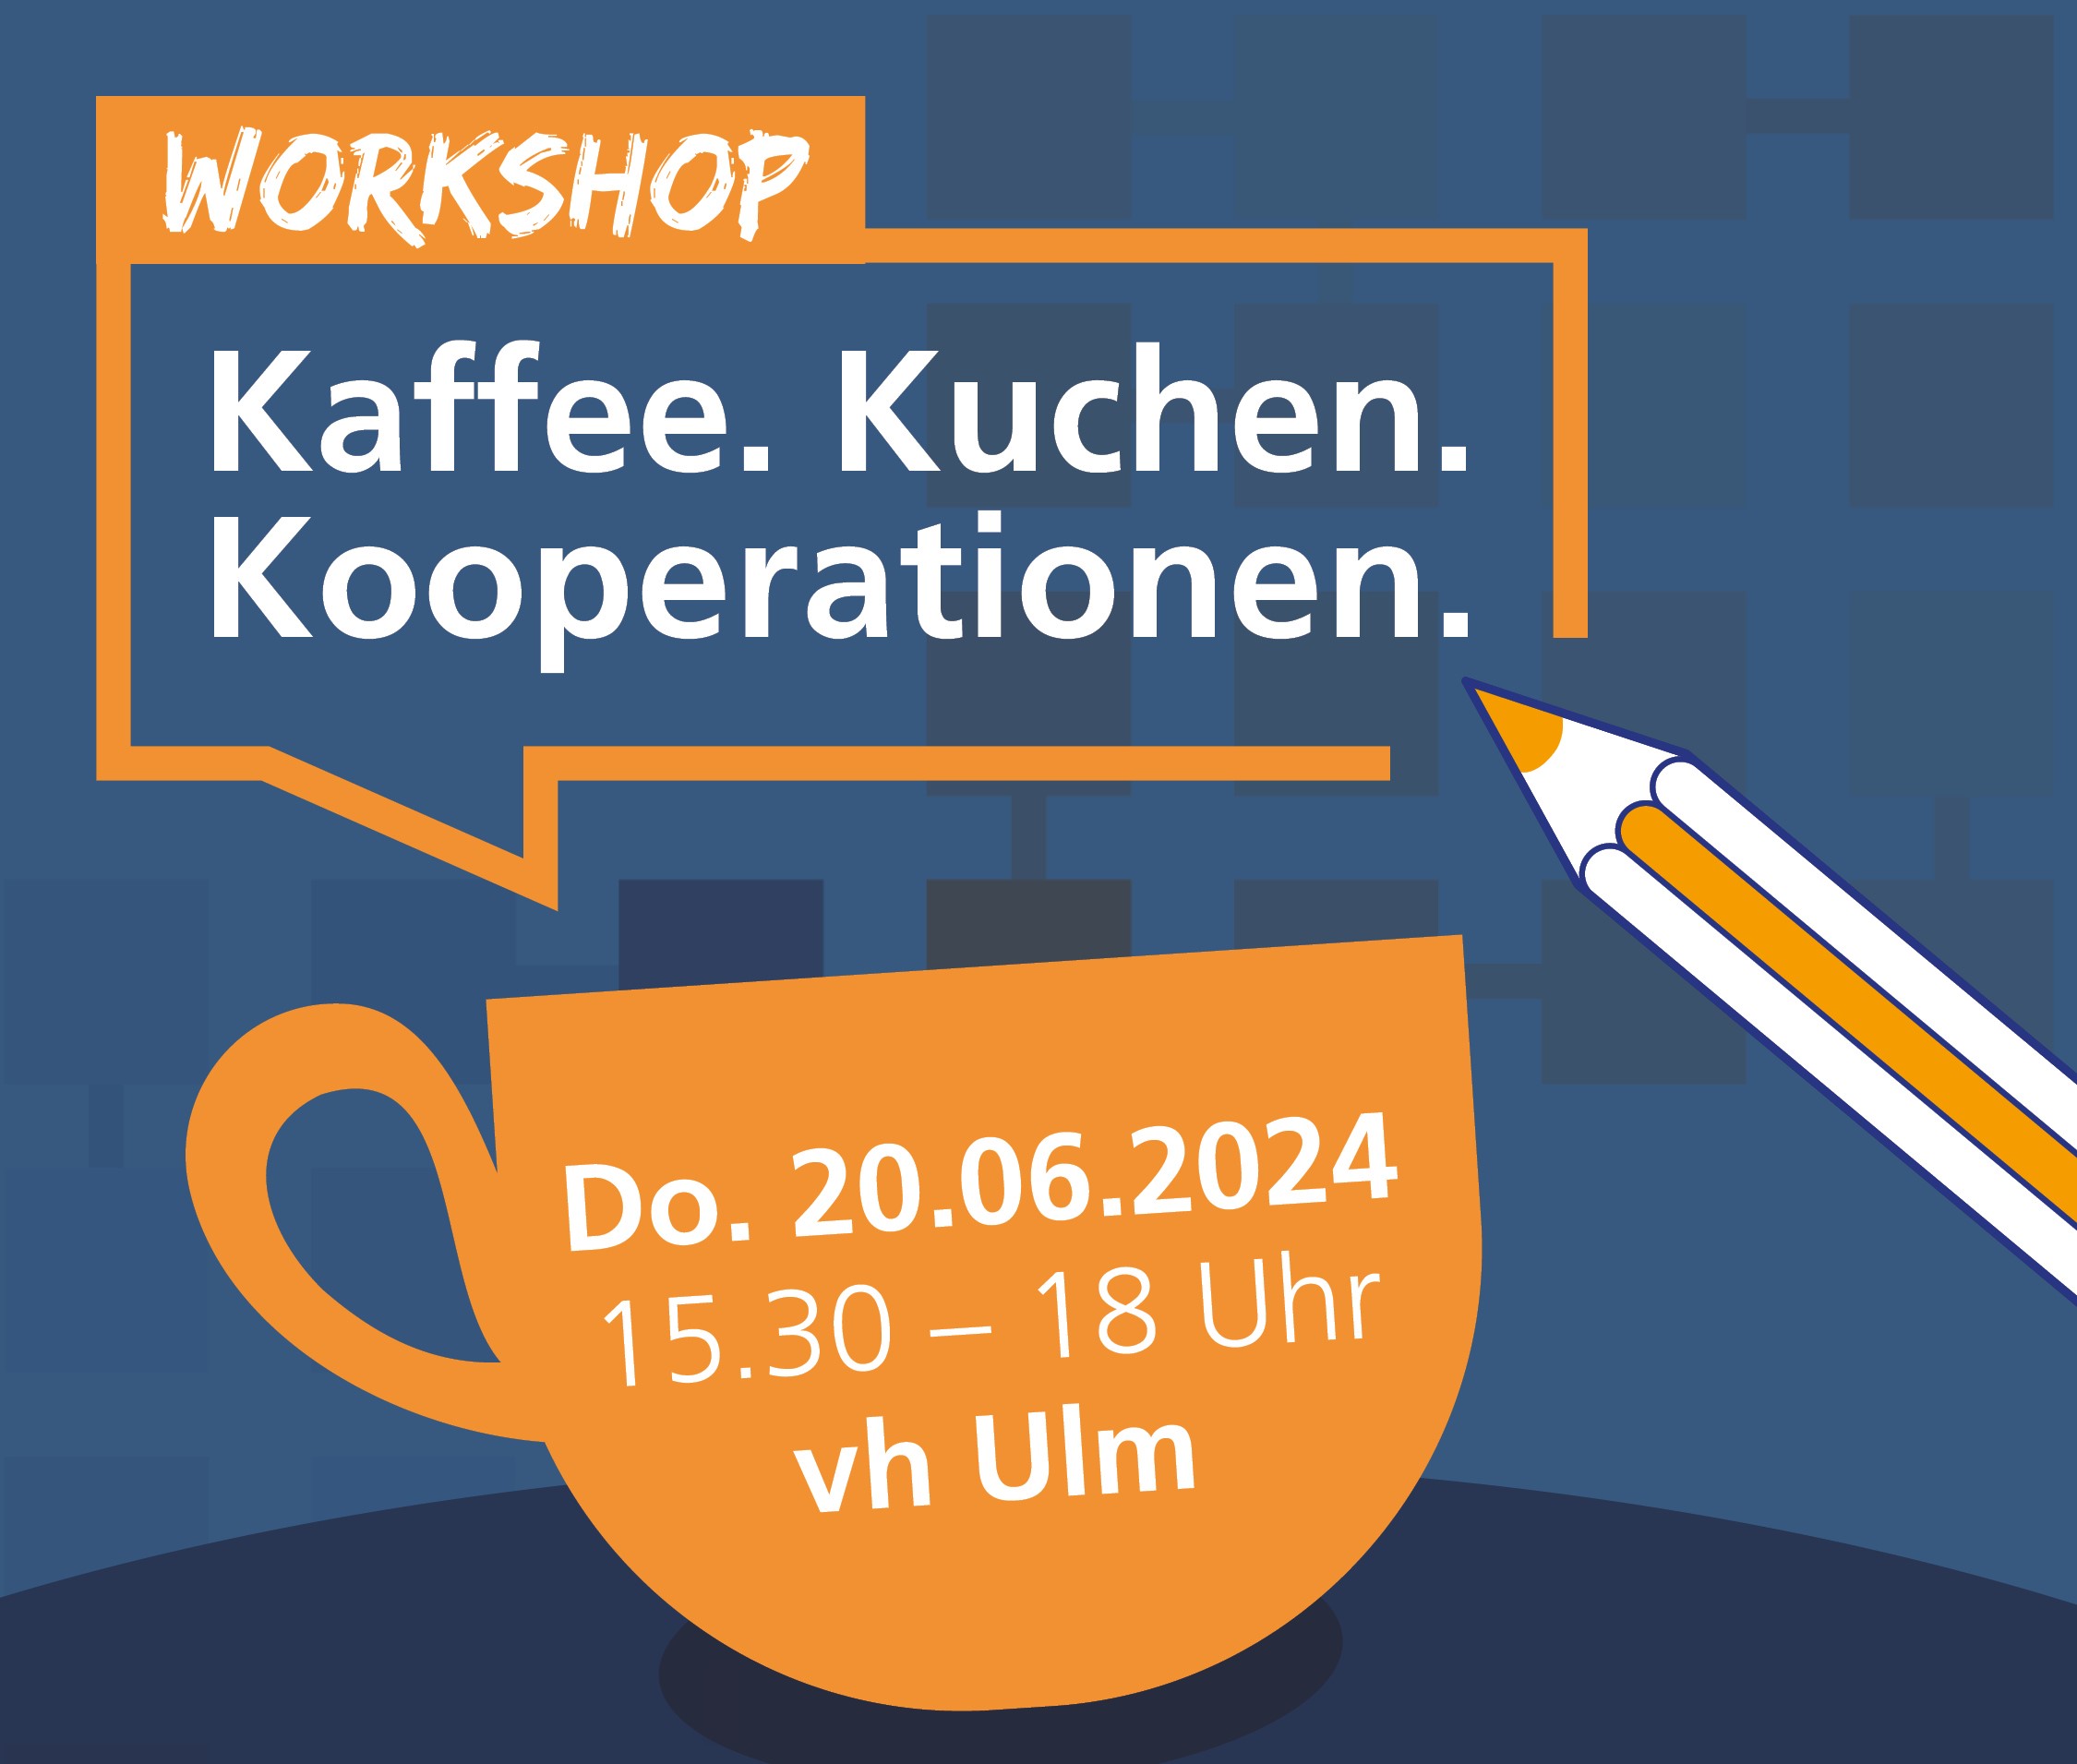 Einladung zum Workshop Kaffee. Kuchen. Kooperationen am 20.06.2024. Orangene Kaffeetasse auf dunkelblauem Hintergrund.